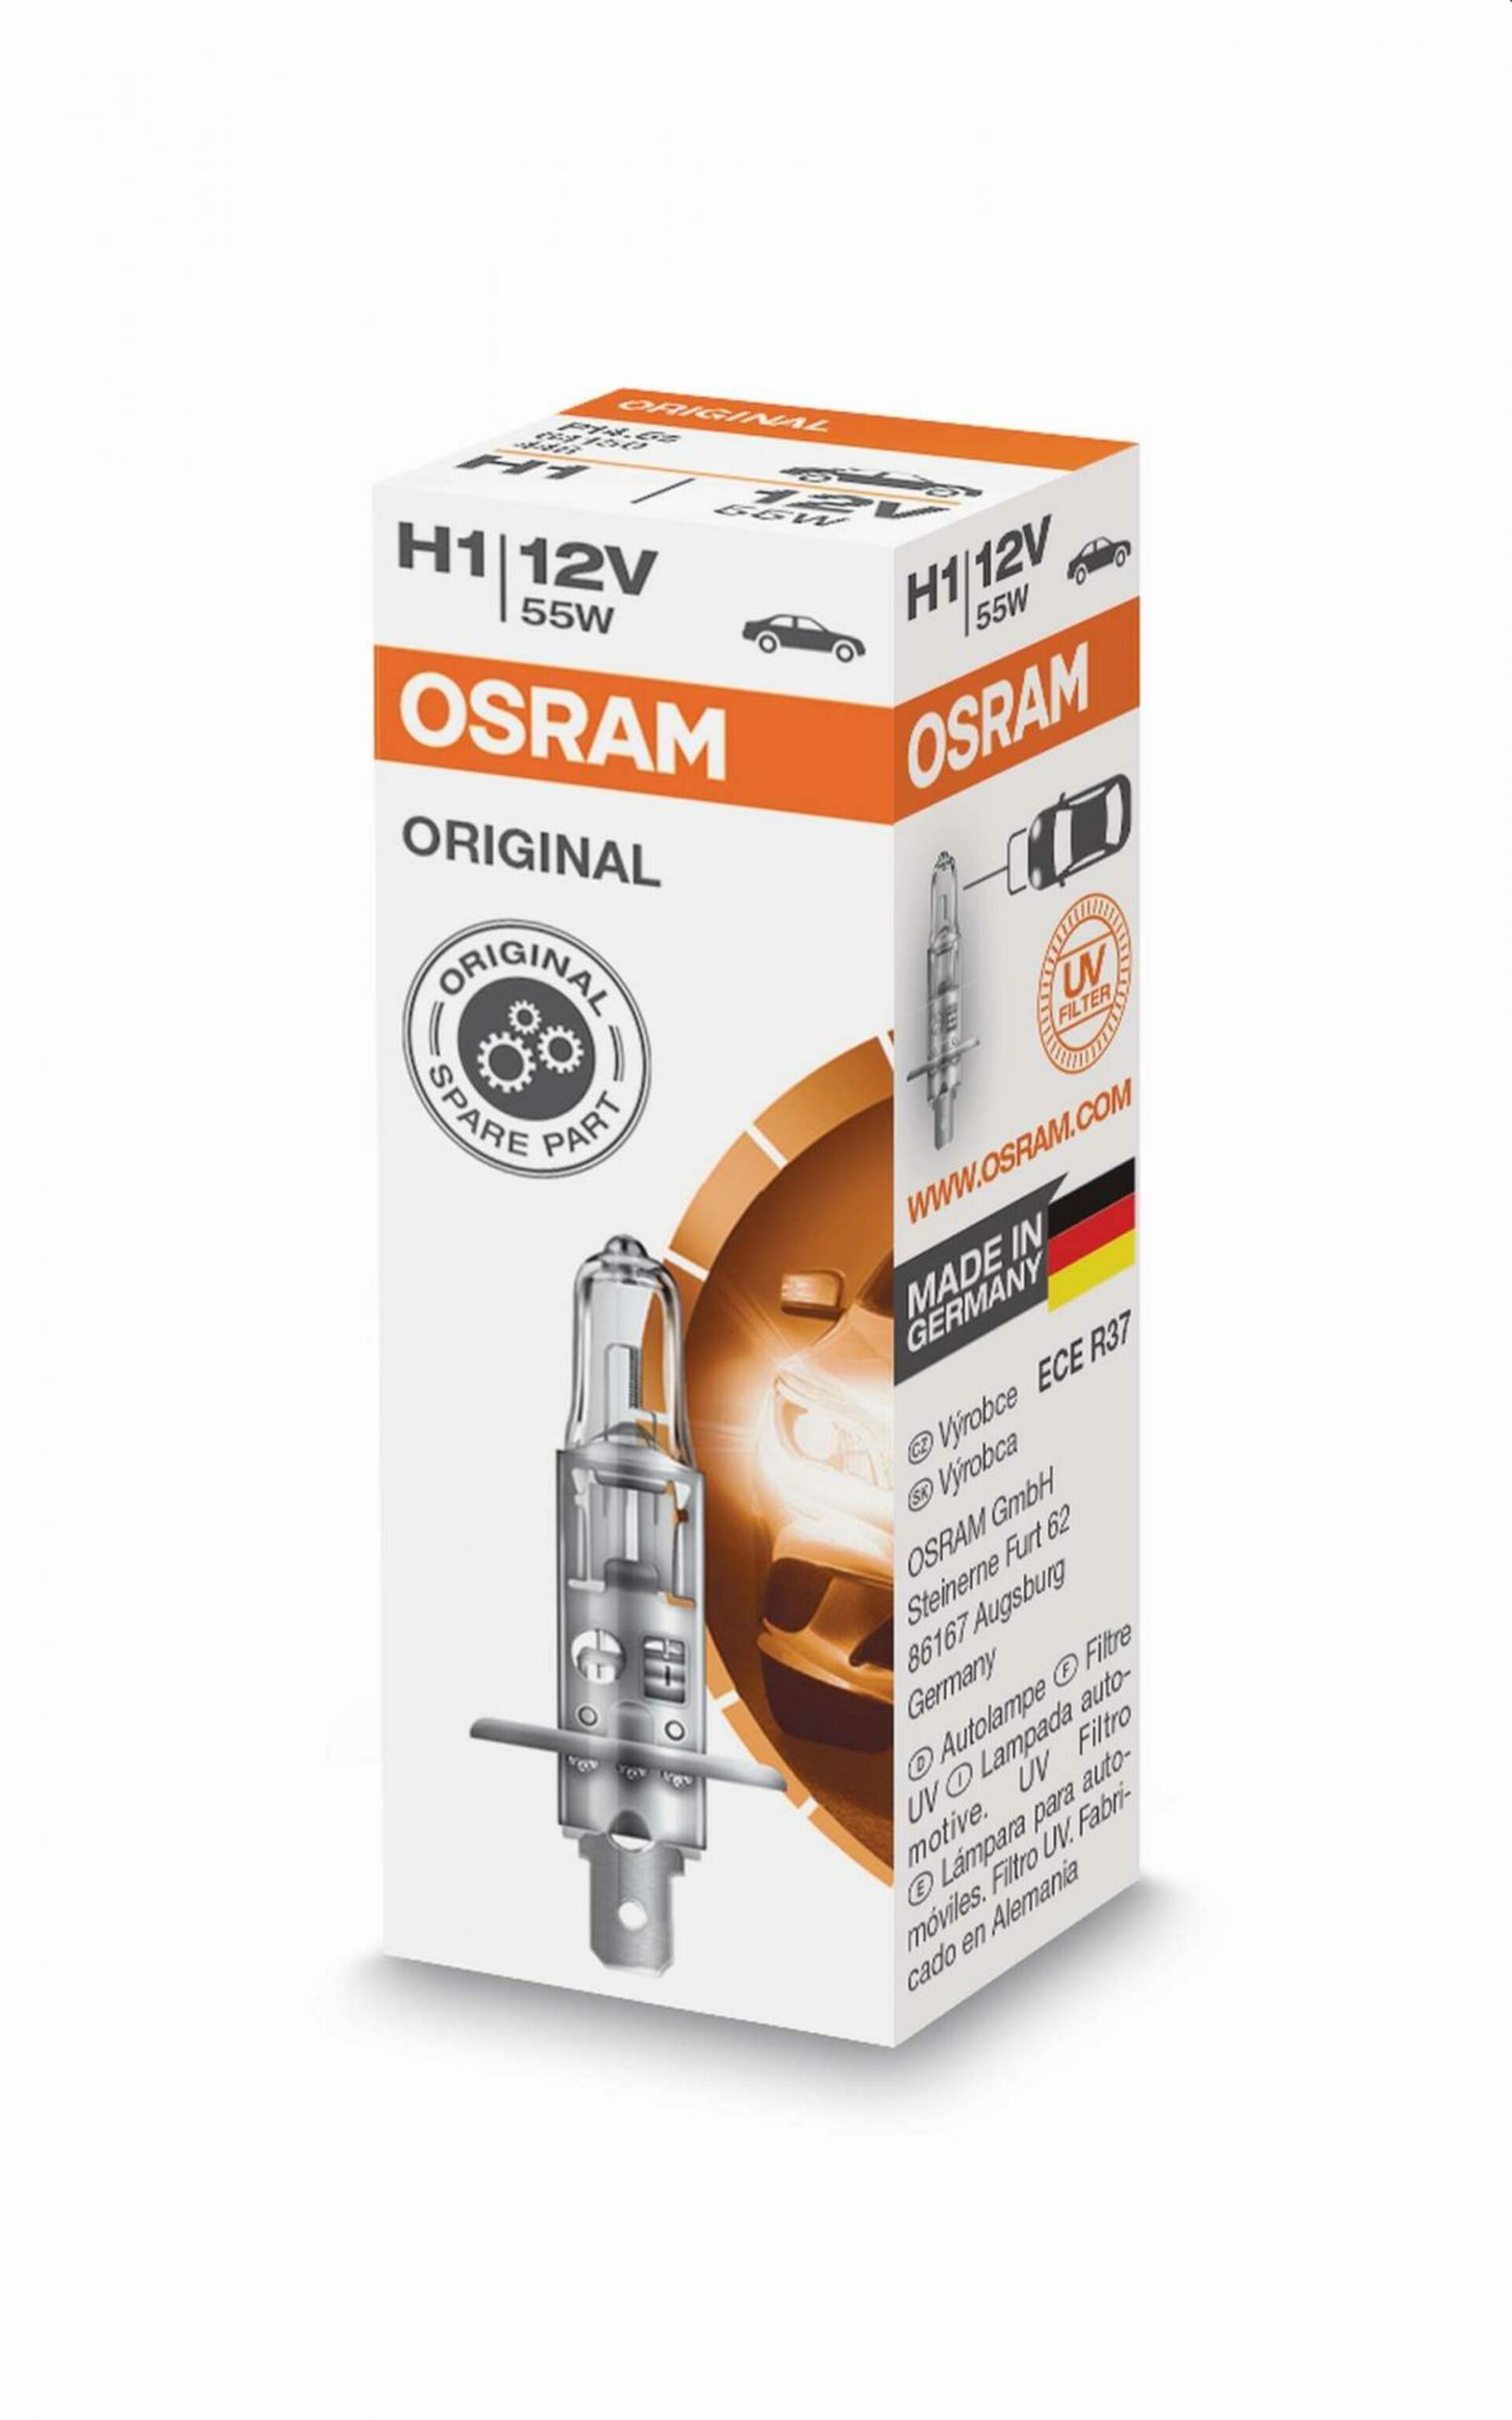 OSRAM H1 64150, 55W, 12V, P14,5s